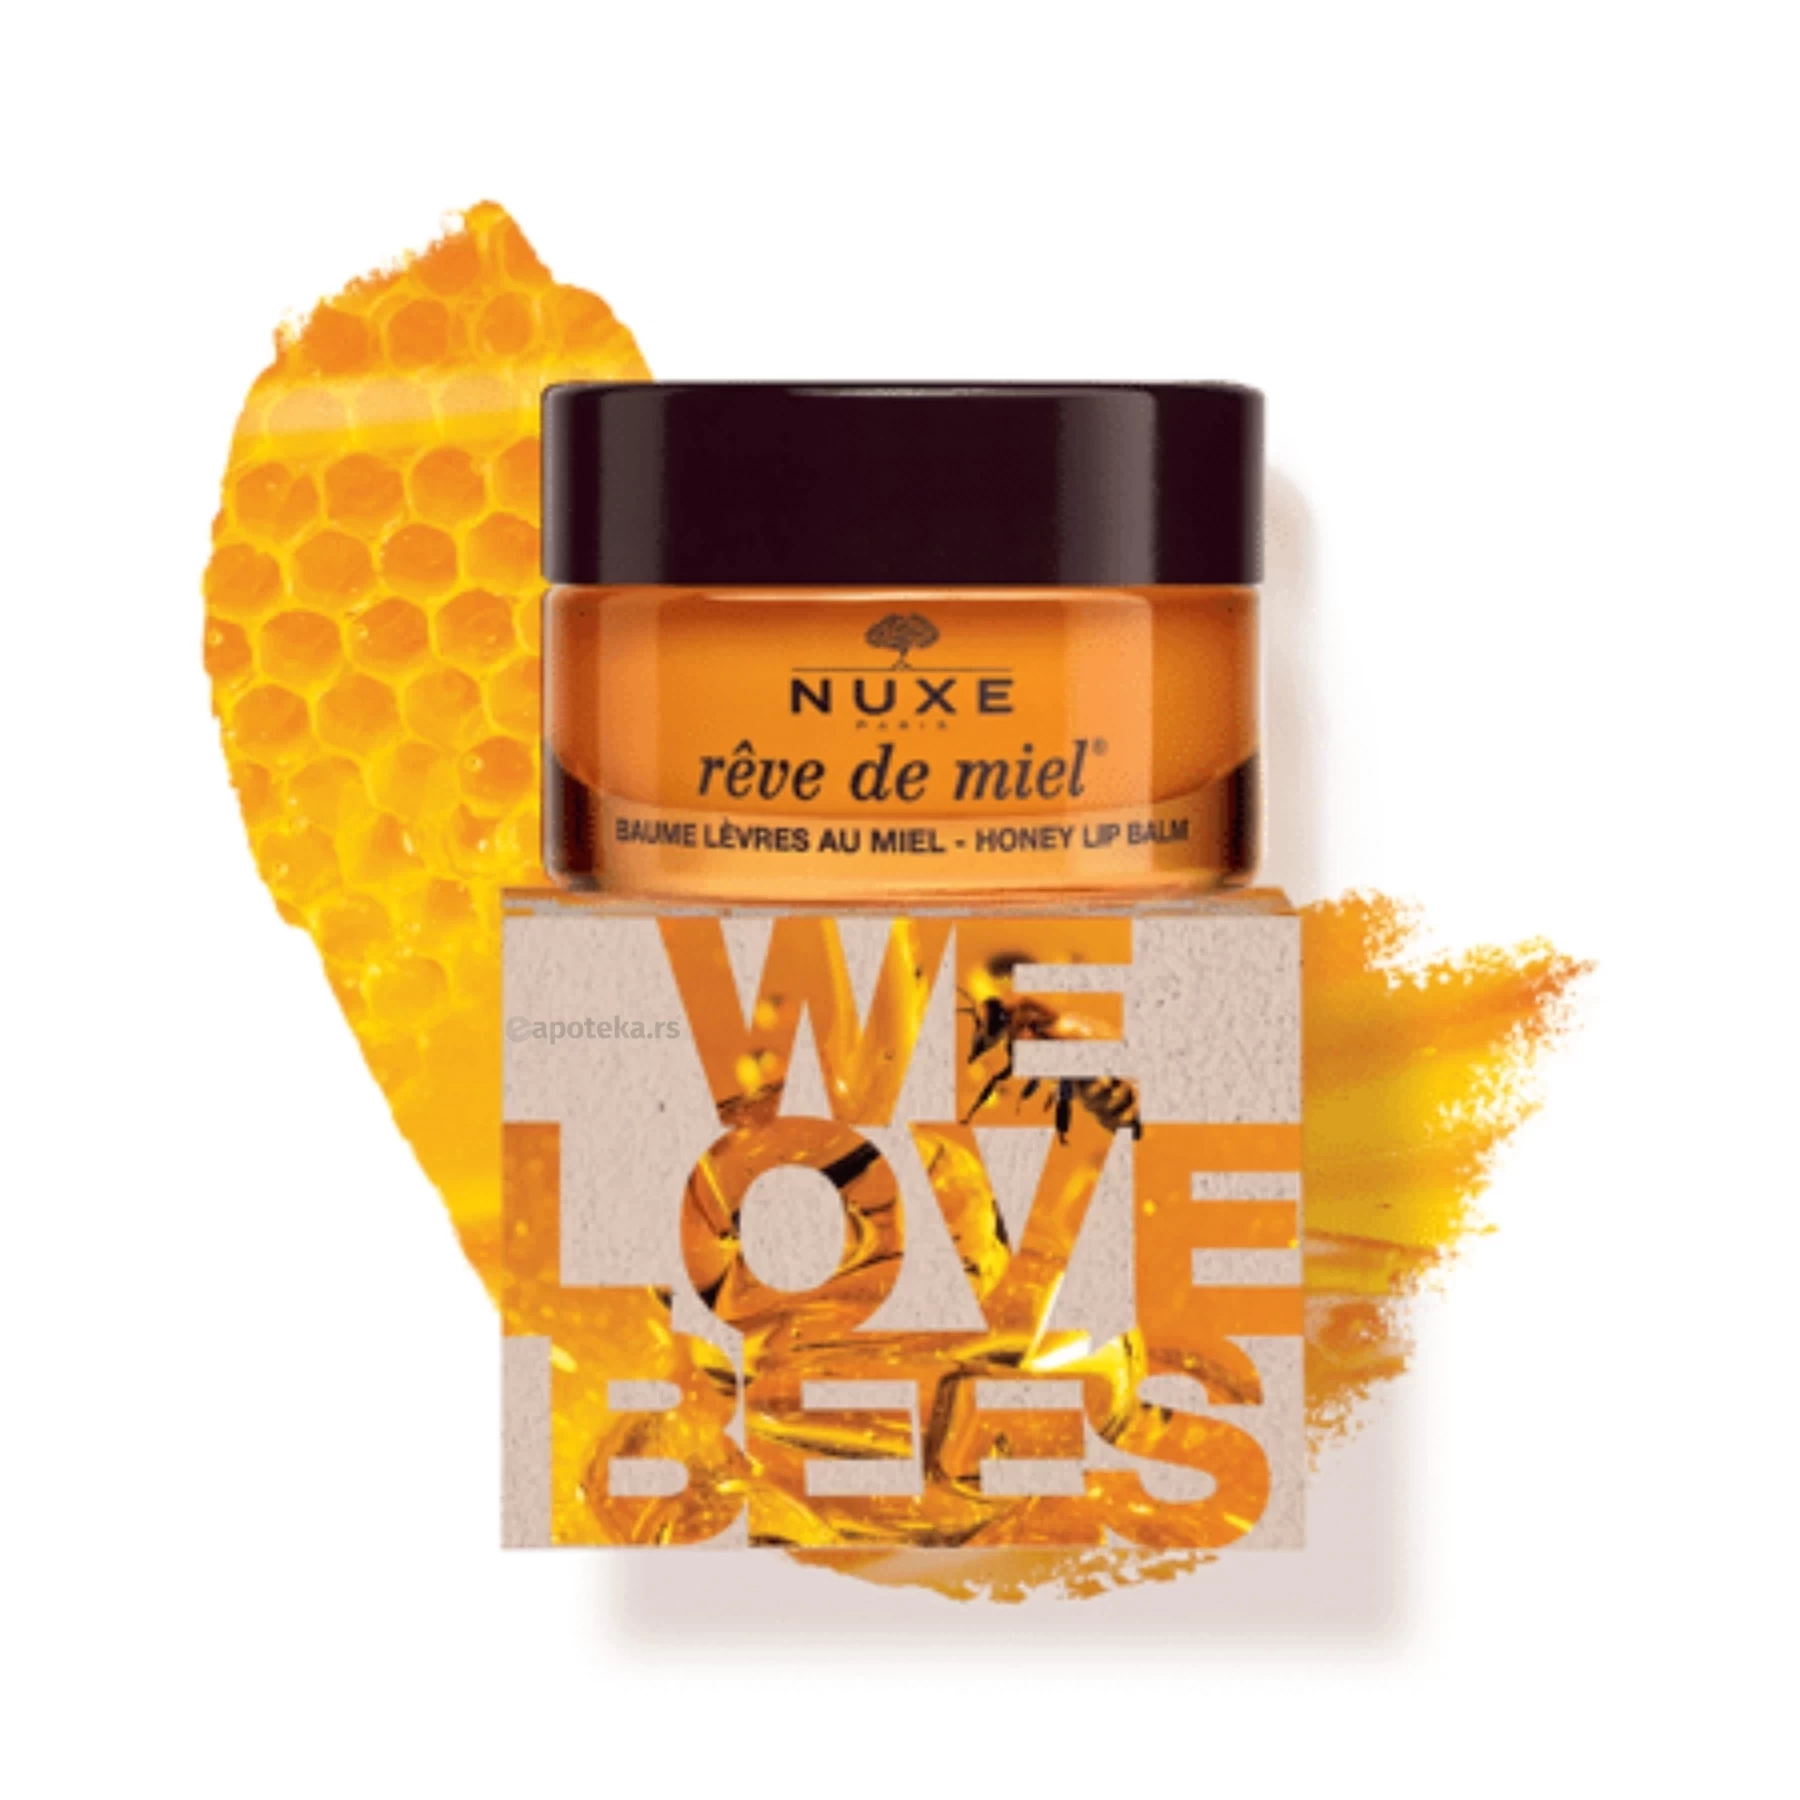 NUXE Rêve de Miel® Baume Levres au Miel Ultra-Nourrissant et Reparateur We Love Bees 15g Limited Edition